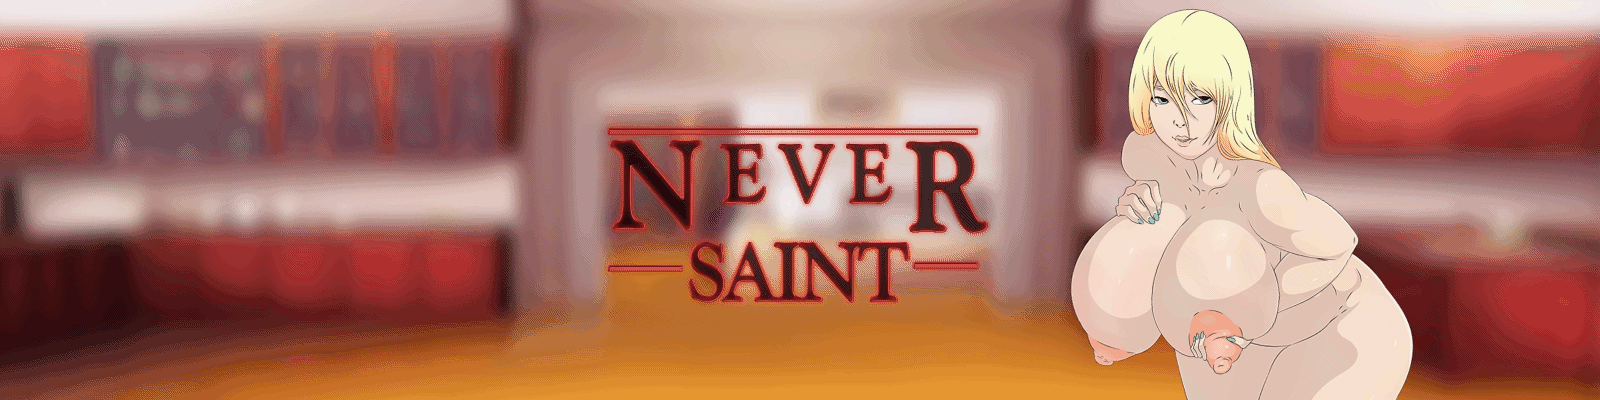 Never Saint1.gif